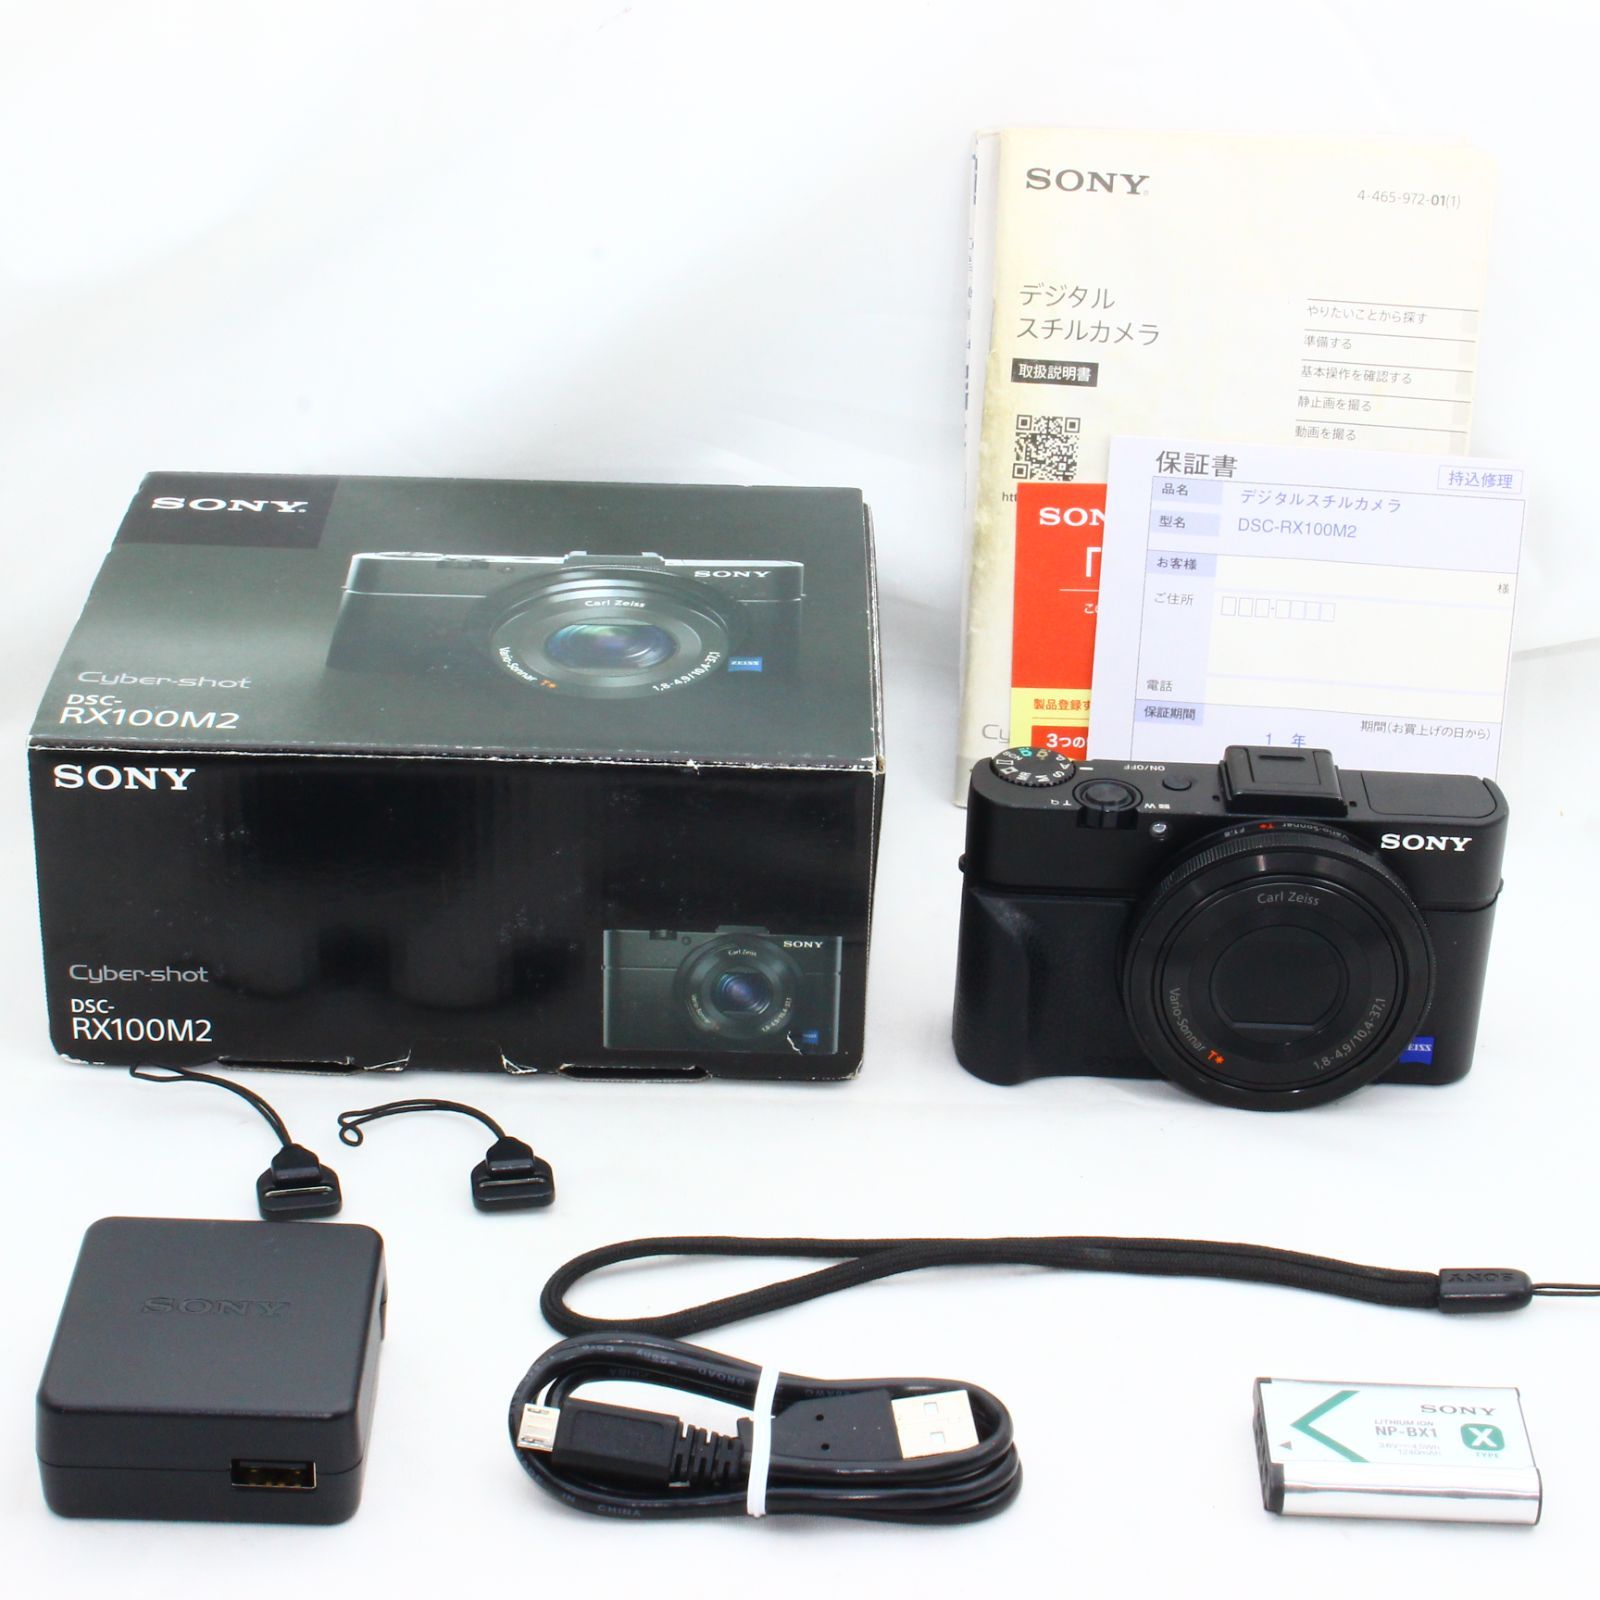 ソニー デジタルカメラ DSC-RX100M2 1.0型センサー F1.8レンズ搭載 ブラック Cyber-shot DSC-RX100M2 - 1